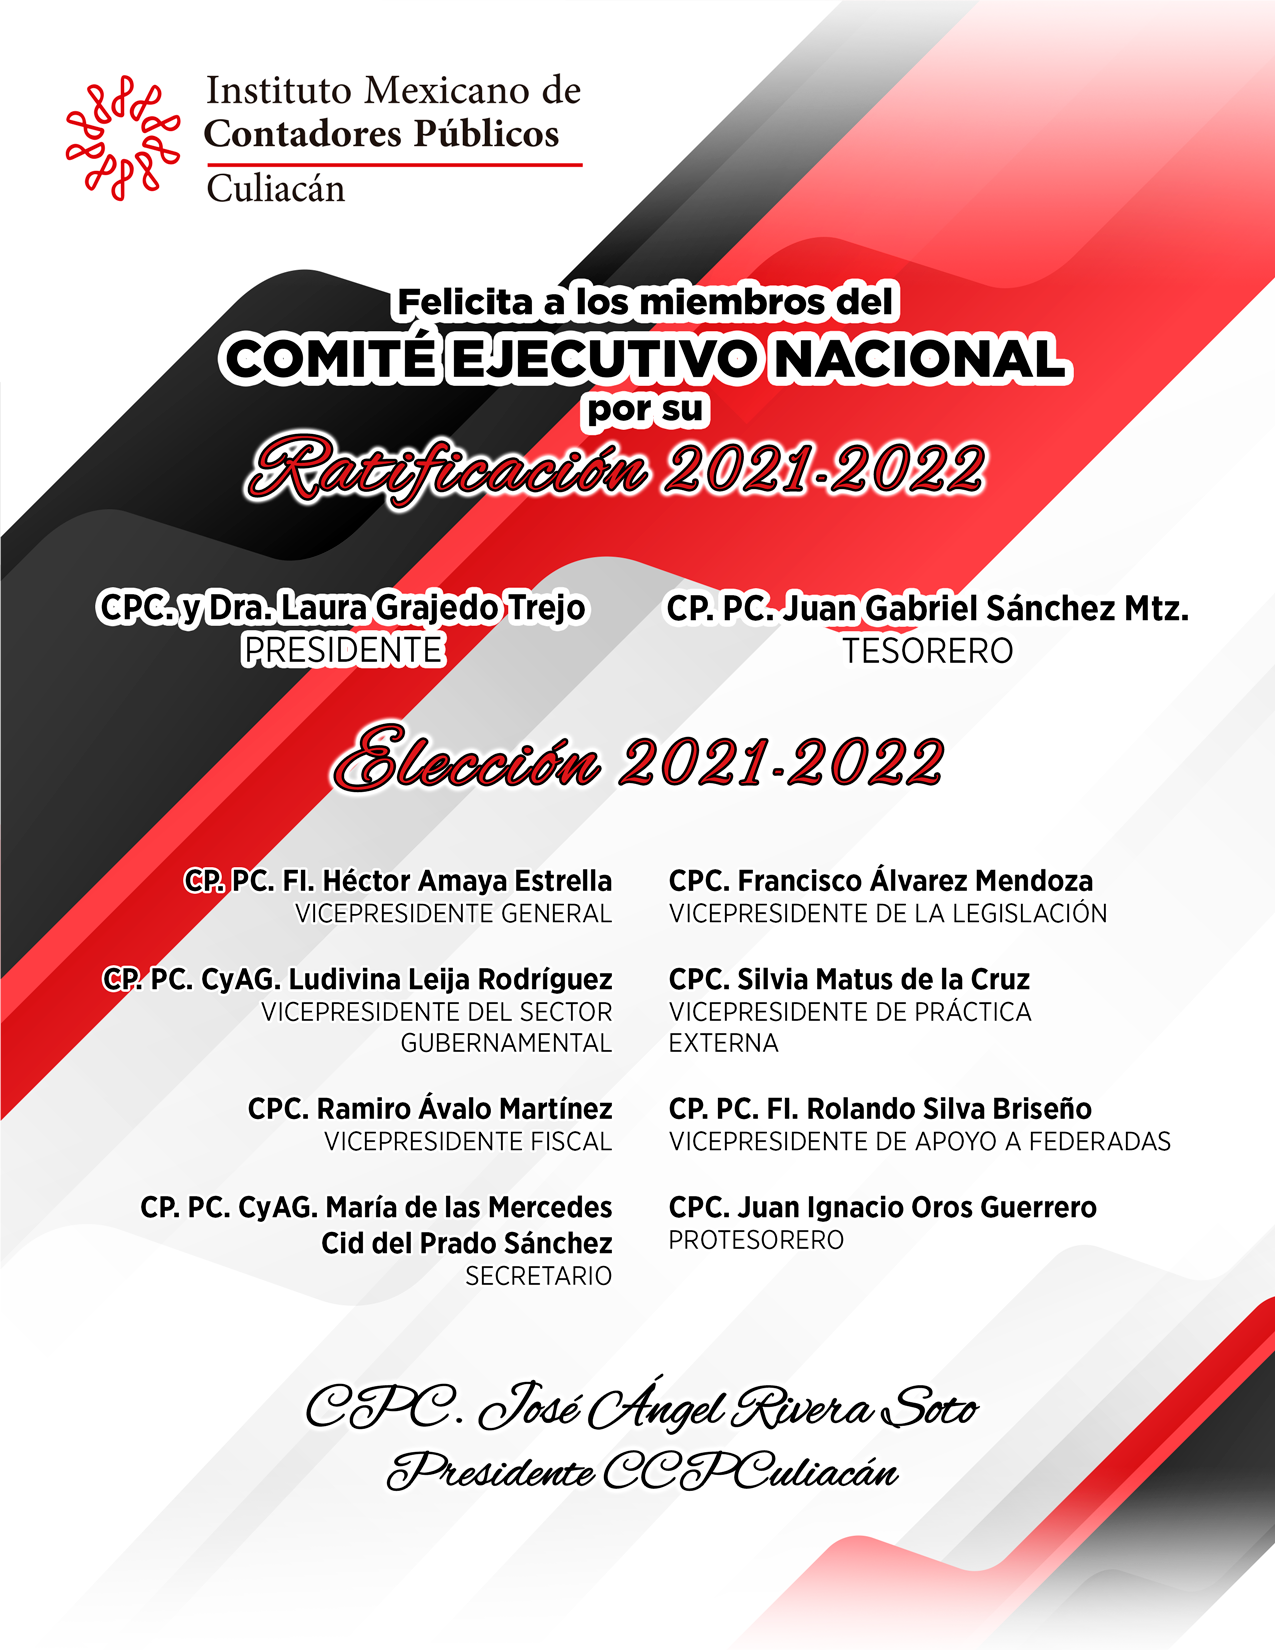 FELICITACION CONSEJO DIRECTIVO NACIONAL IMCP 2021